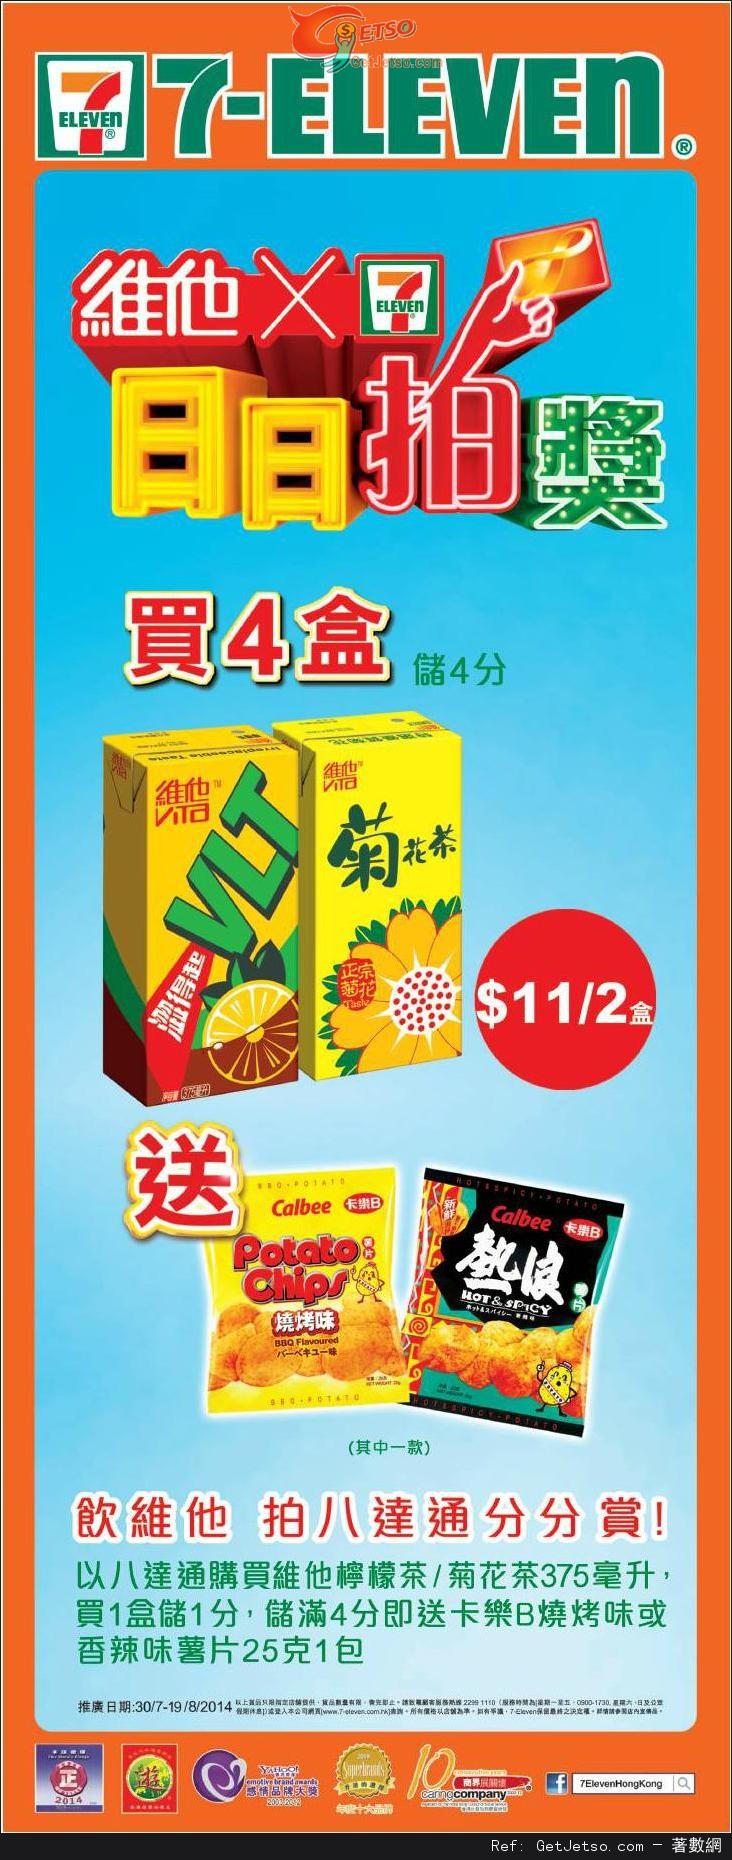 7-Eleven 買四盒維他檸檬茶/菊花茶送卡樂B薯片優惠(至14年8月19日)圖片1